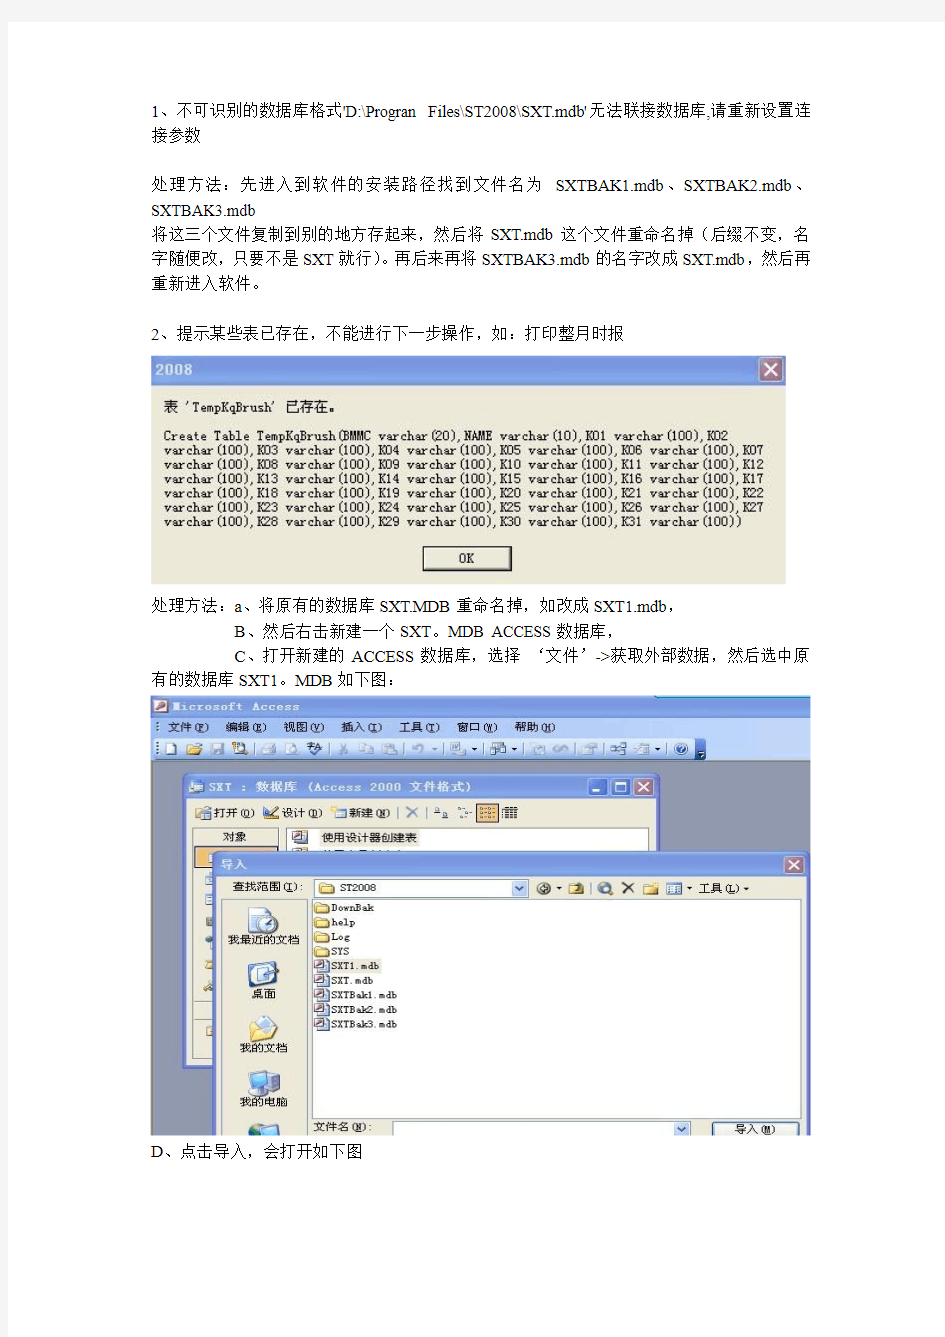 考勤软件舒特ST2008用ACCESS常见问题